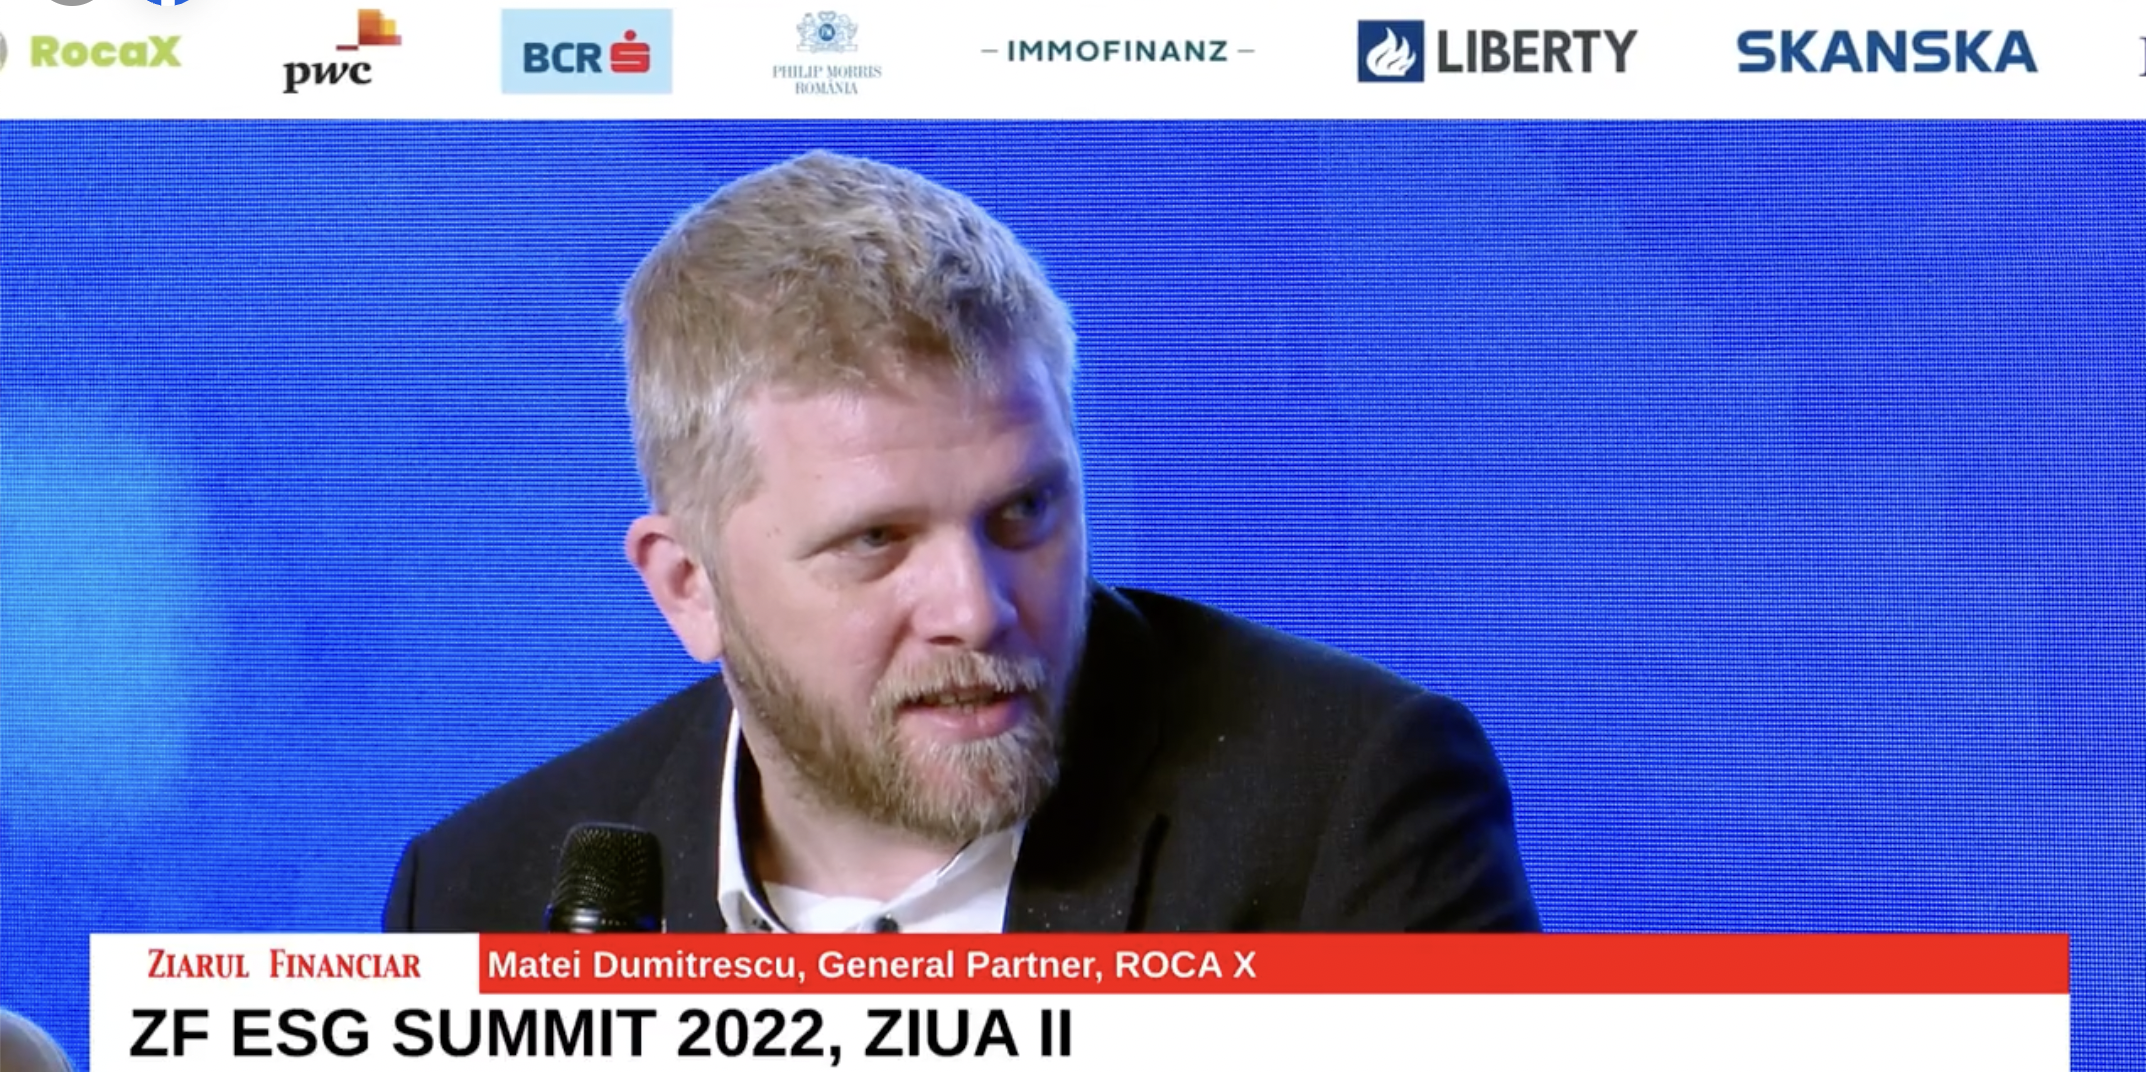 Matei Dumitrescu, General Partner, ROCA X: Nu ne-am propus din start să mergem către business-uri sustenabile, dar acum ne propunem din ce în ce mai mult